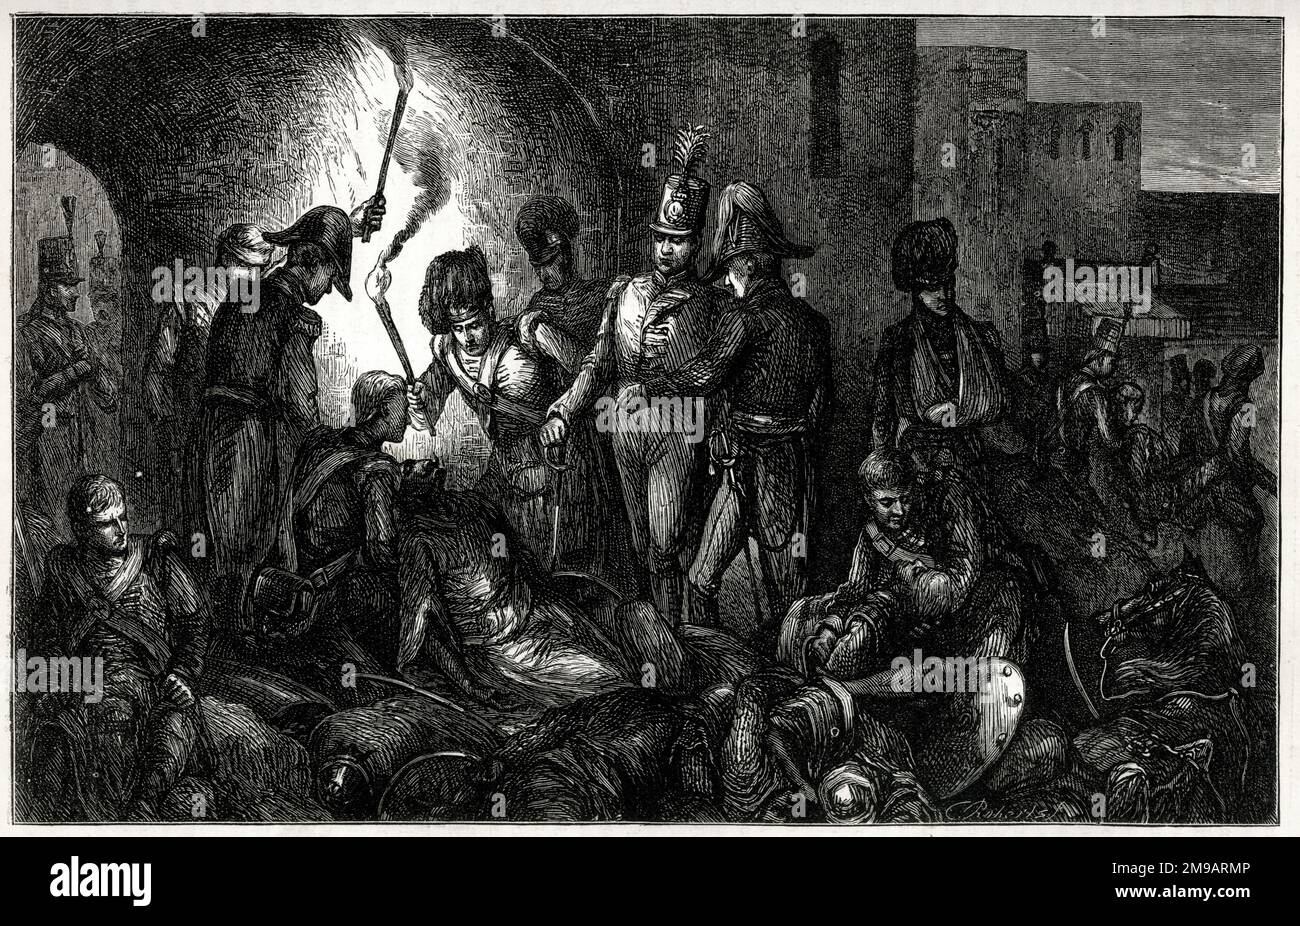 Entdeckung der Leiche von Tipu Sultan, Belagerung von Seringapatam, Indien, 4. Mai 1799, Ende des vierten Anglo-Mysore-Krieges (1798-1799) zwischen der British East India Company und dem Königreich Mysore. Stockfoto